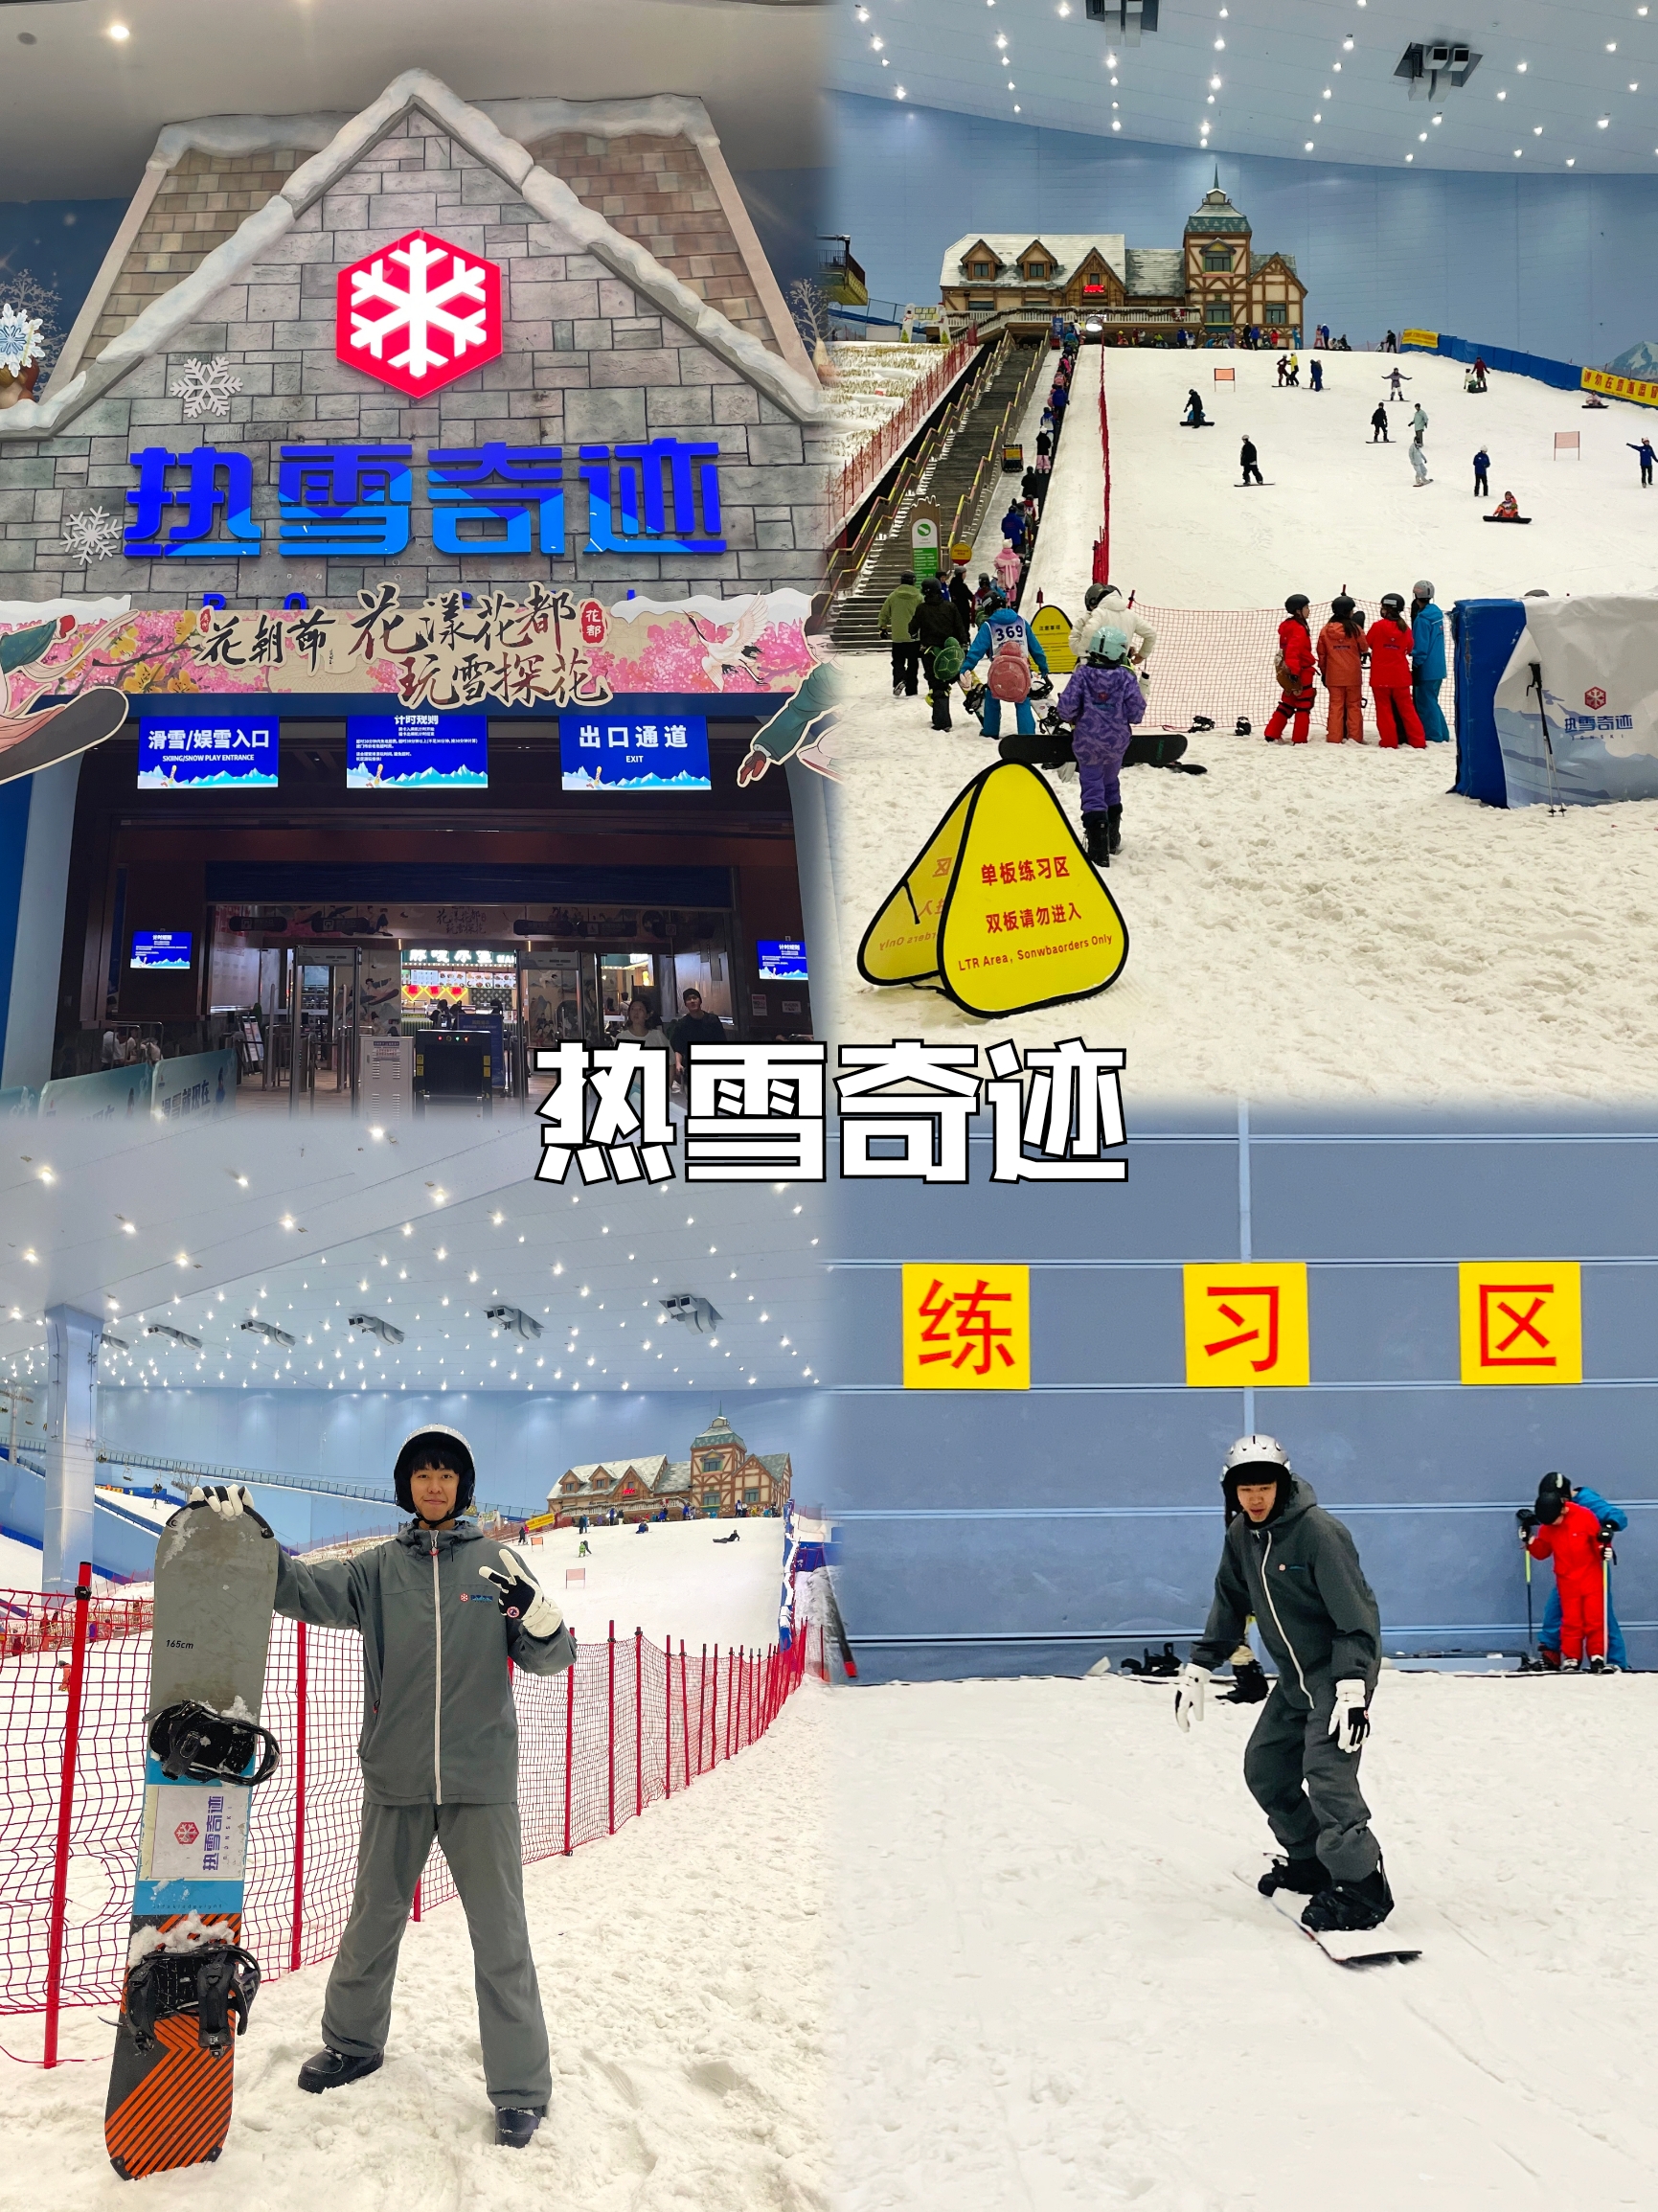 在南方滑雪❗还得来广州热雪奇迹❄️